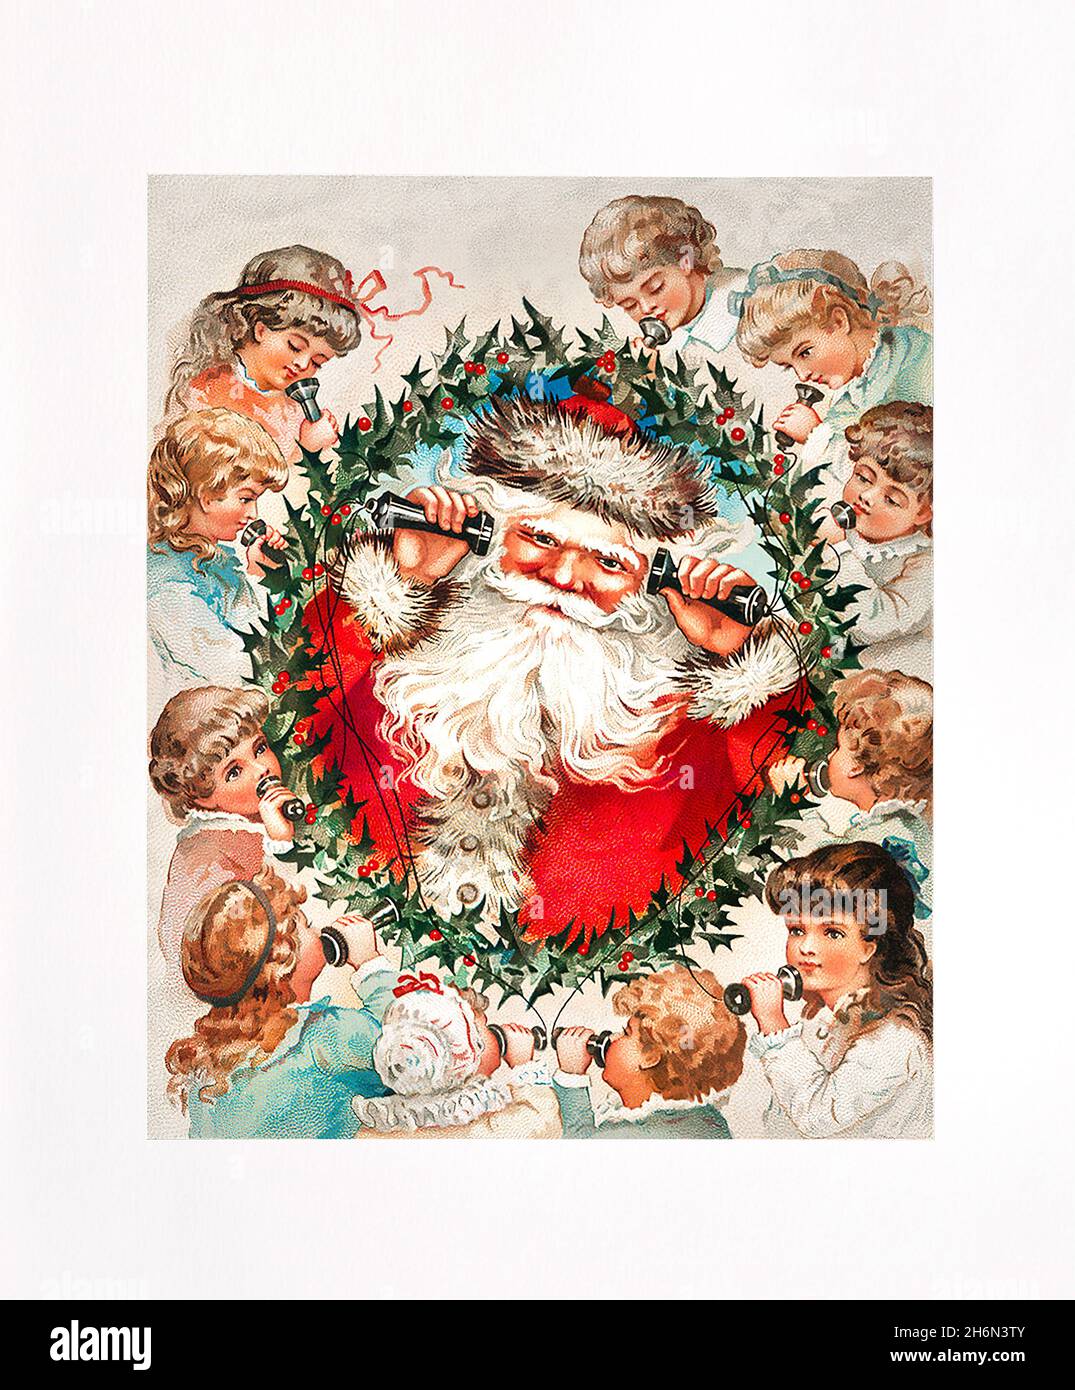 Le Père Noël appelle des enfants pour des cadeaux de Noël Banque D'Images